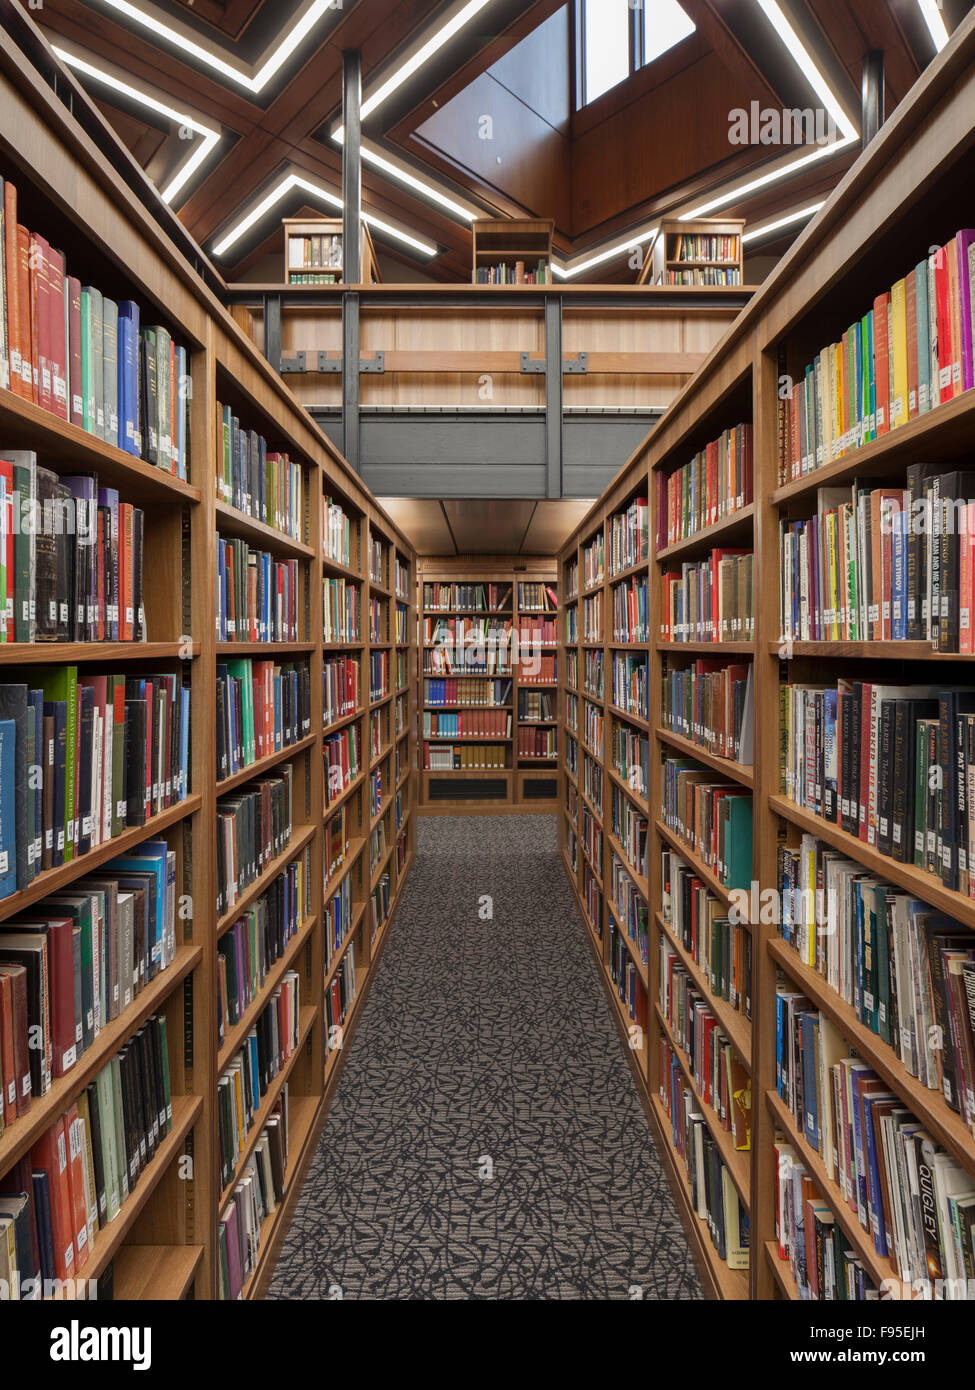 Bibliothèque de recherche Barker, Palace Green Library, l'Université de Durham. Rangée d'étagères de bibliothèque avec des livres. Banque D'Images